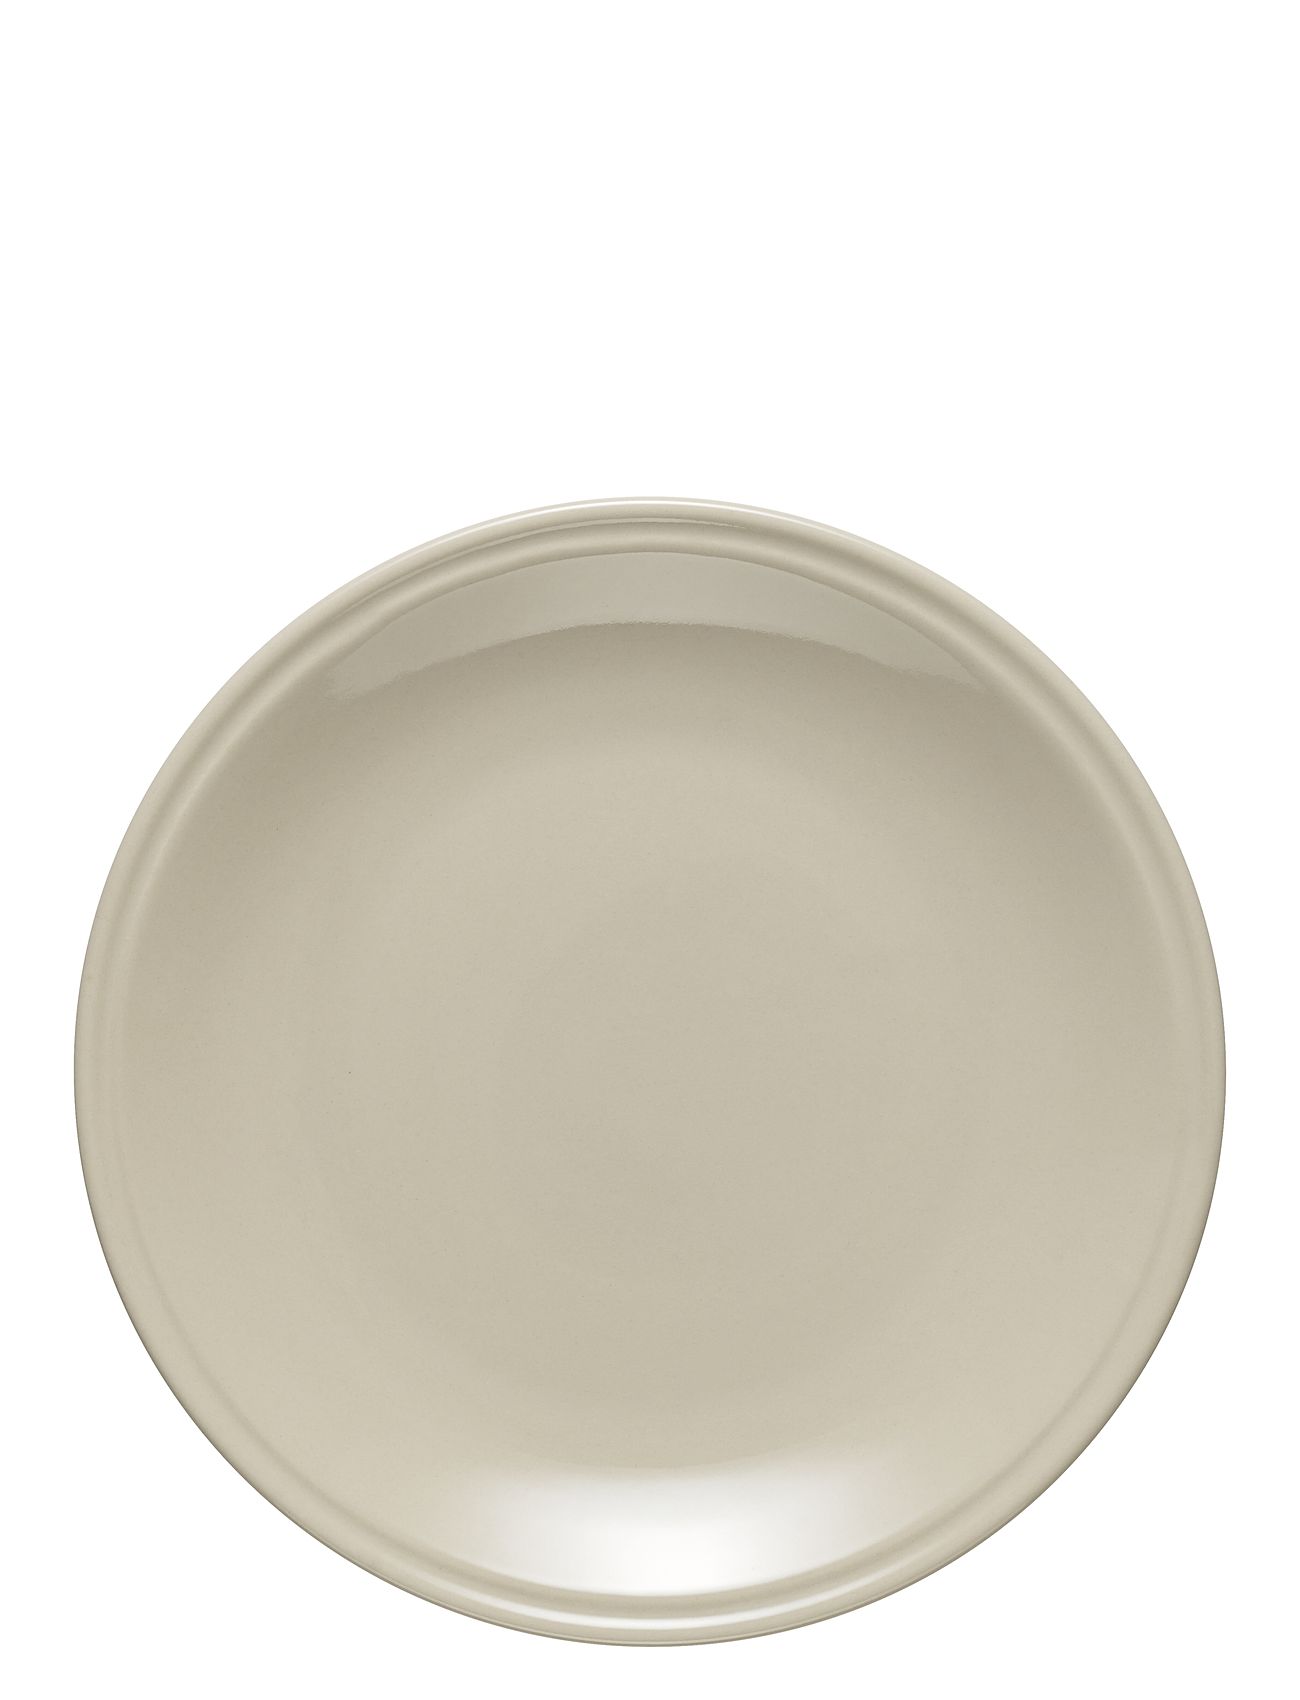 Höganäs Keramik Plate 19Cm Home Tableware Plates Small Plates Beige Rörstrand